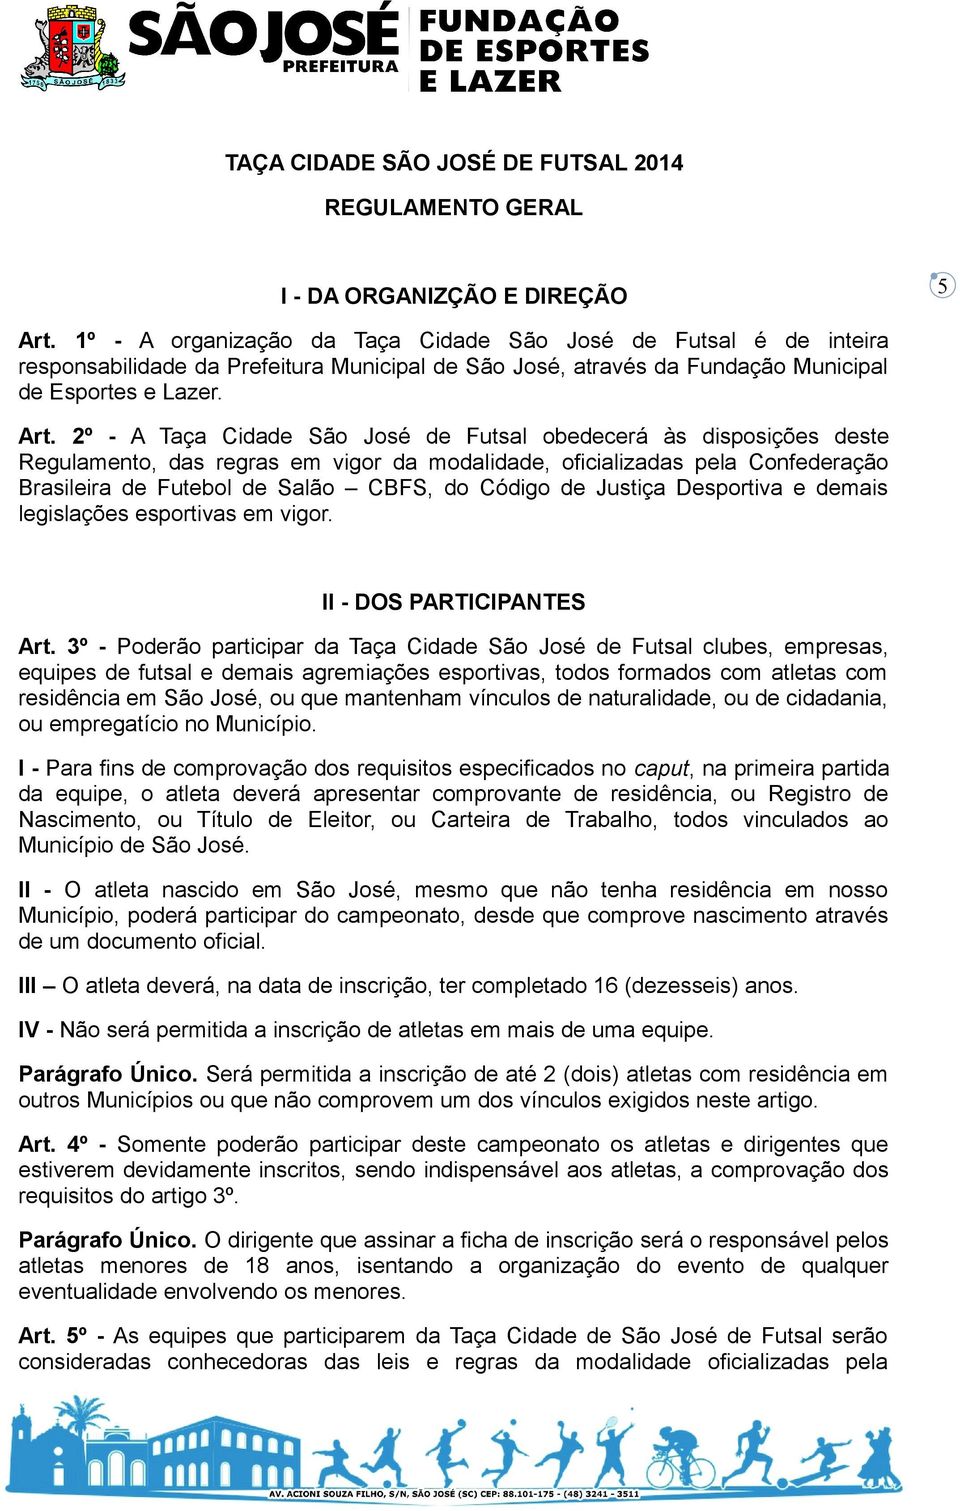 2º - A Taça Cidade São José de Futsal obedecerá às disposições deste Regulamento, das regras em vigor da modalidade, oficializadas pela Confederação Brasileira de Futebol de Salão CBFS, do Código de